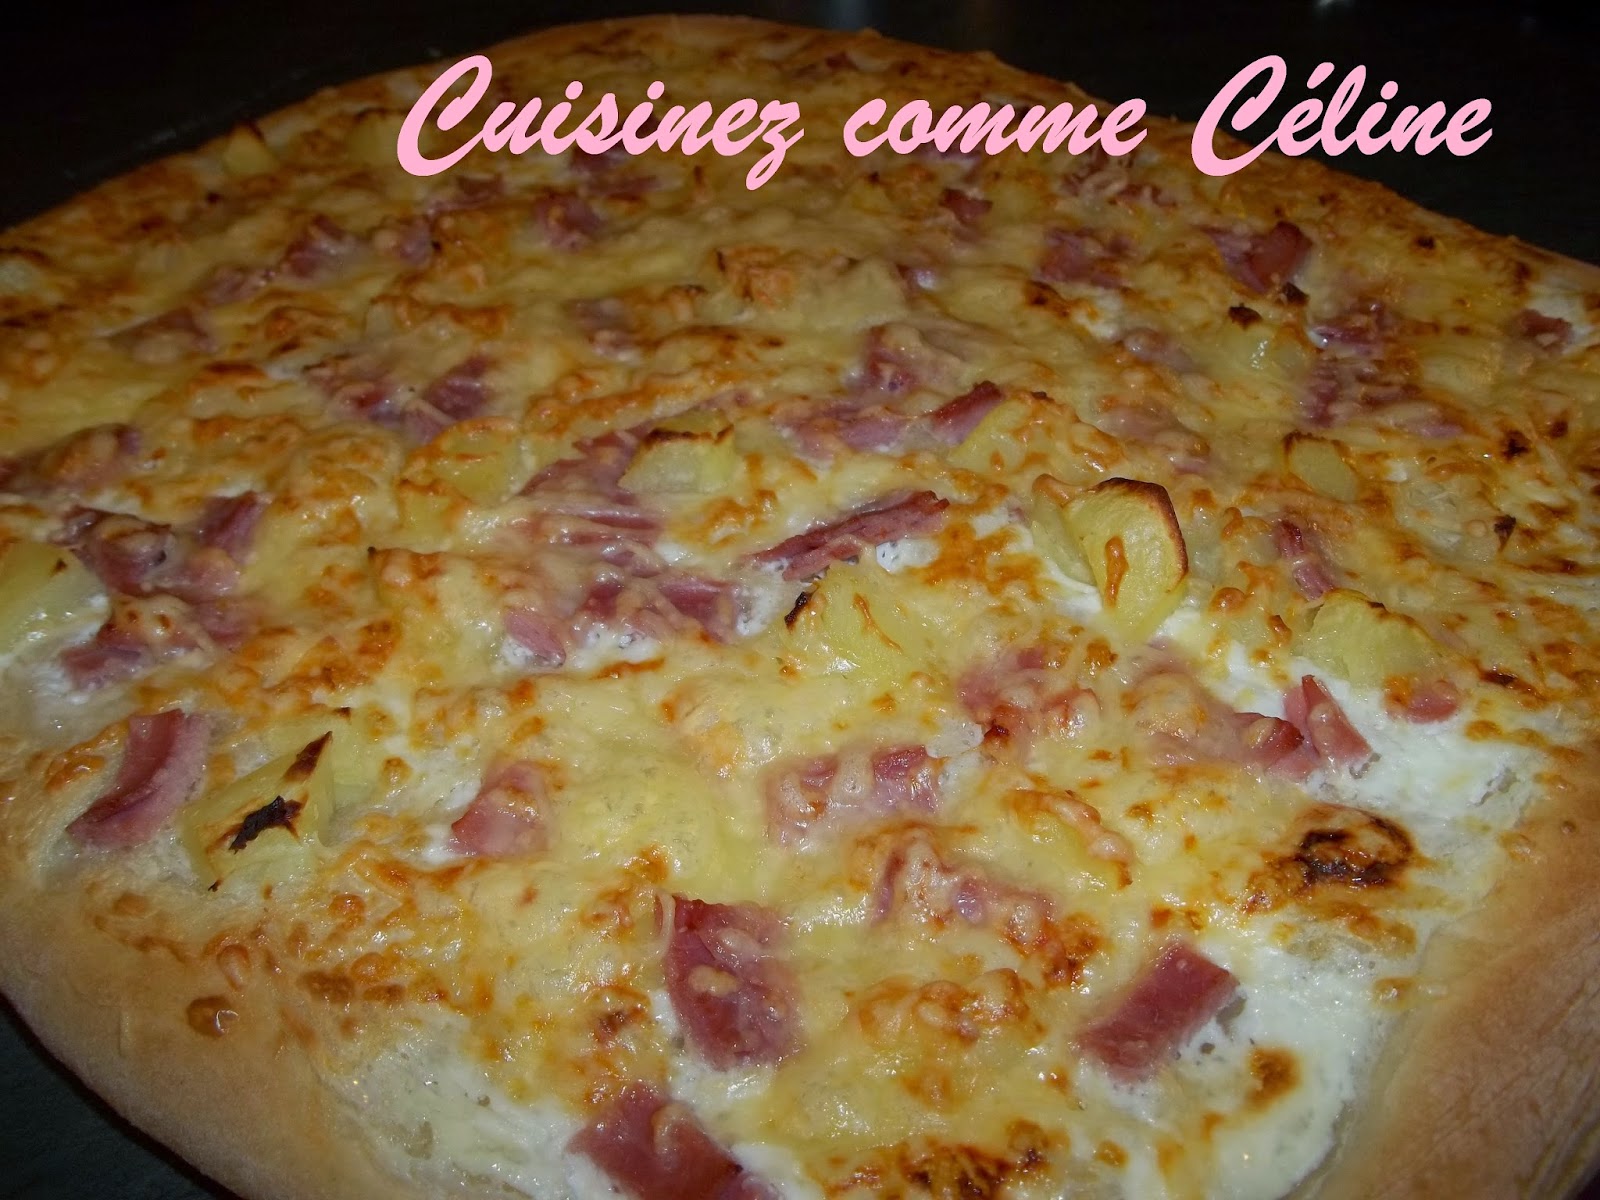 http://cuisinezcommeceline.blogspot.fr/2015/03/bonsoir-jadore-la-pizza-et-vous-ma.html